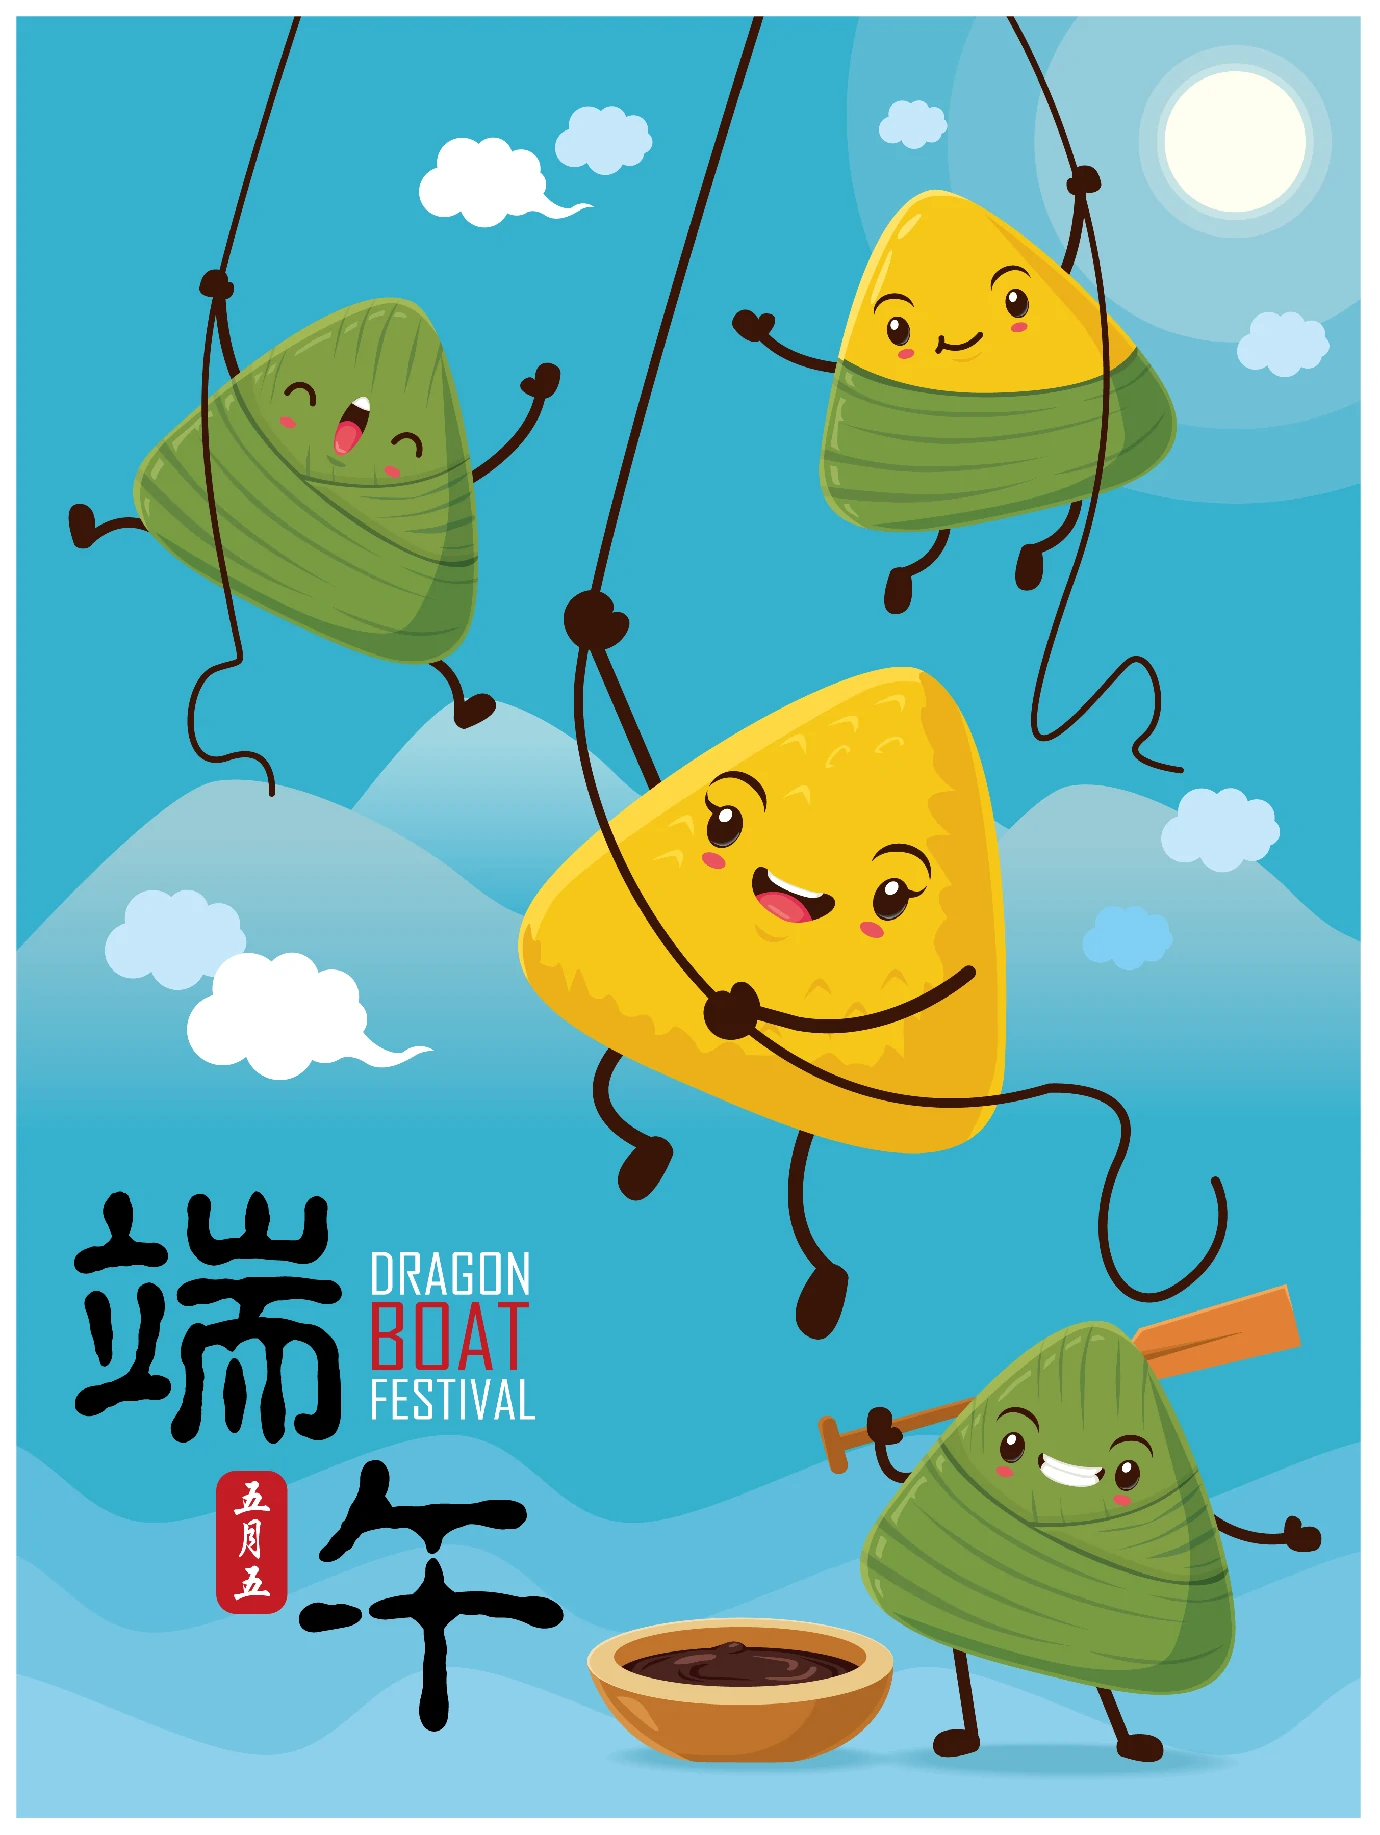 中国传统节日卡通手绘端午节赛龙舟粽子插画海报AI矢量设计素材【021】